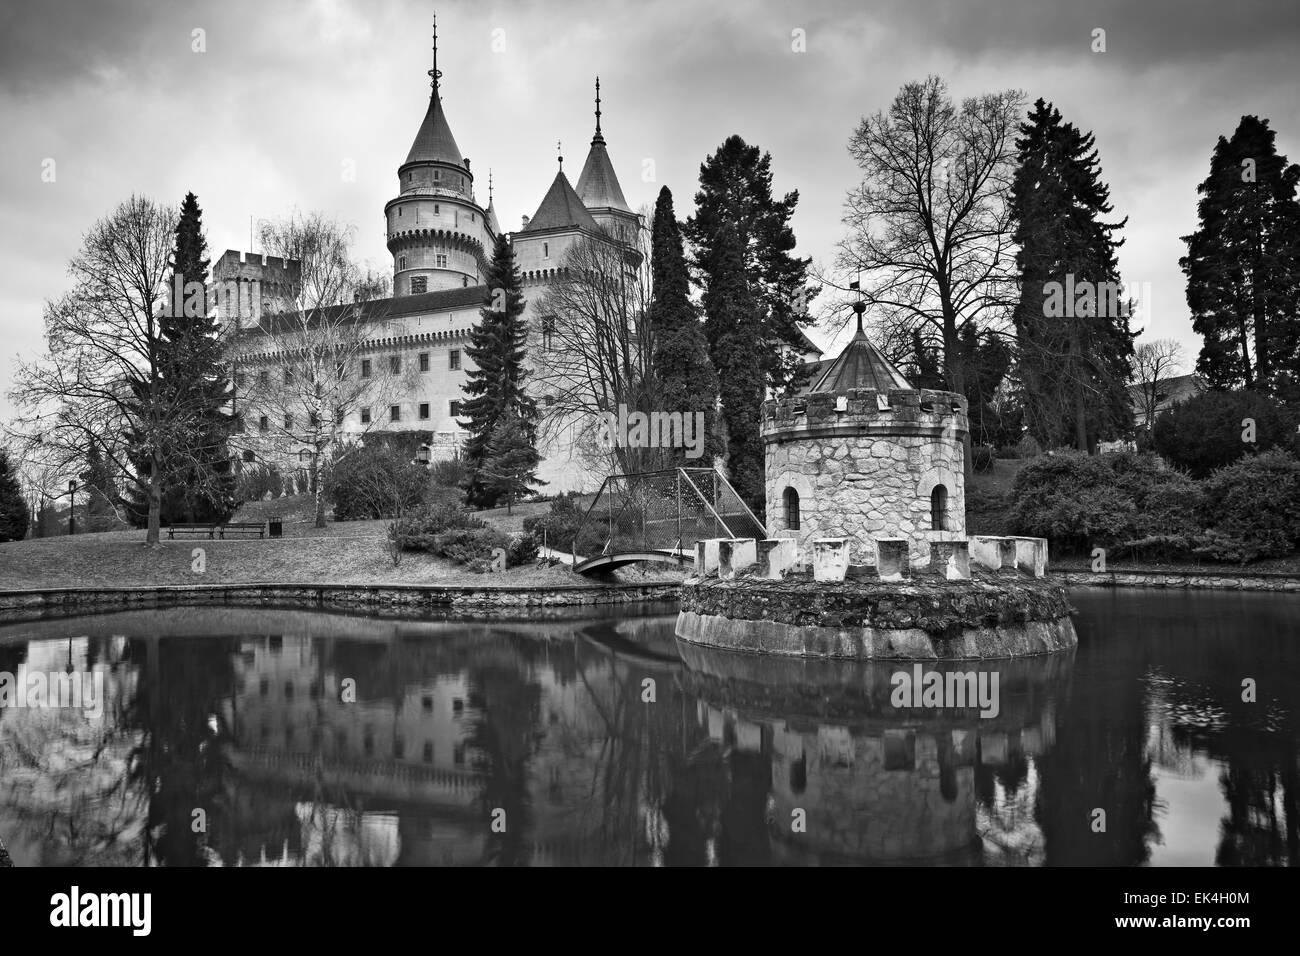 1 / 12 immagini in bianco e nero del castello di Bojnice, situato nel cuore della Slovacchia, l'Europa. Foto Stock